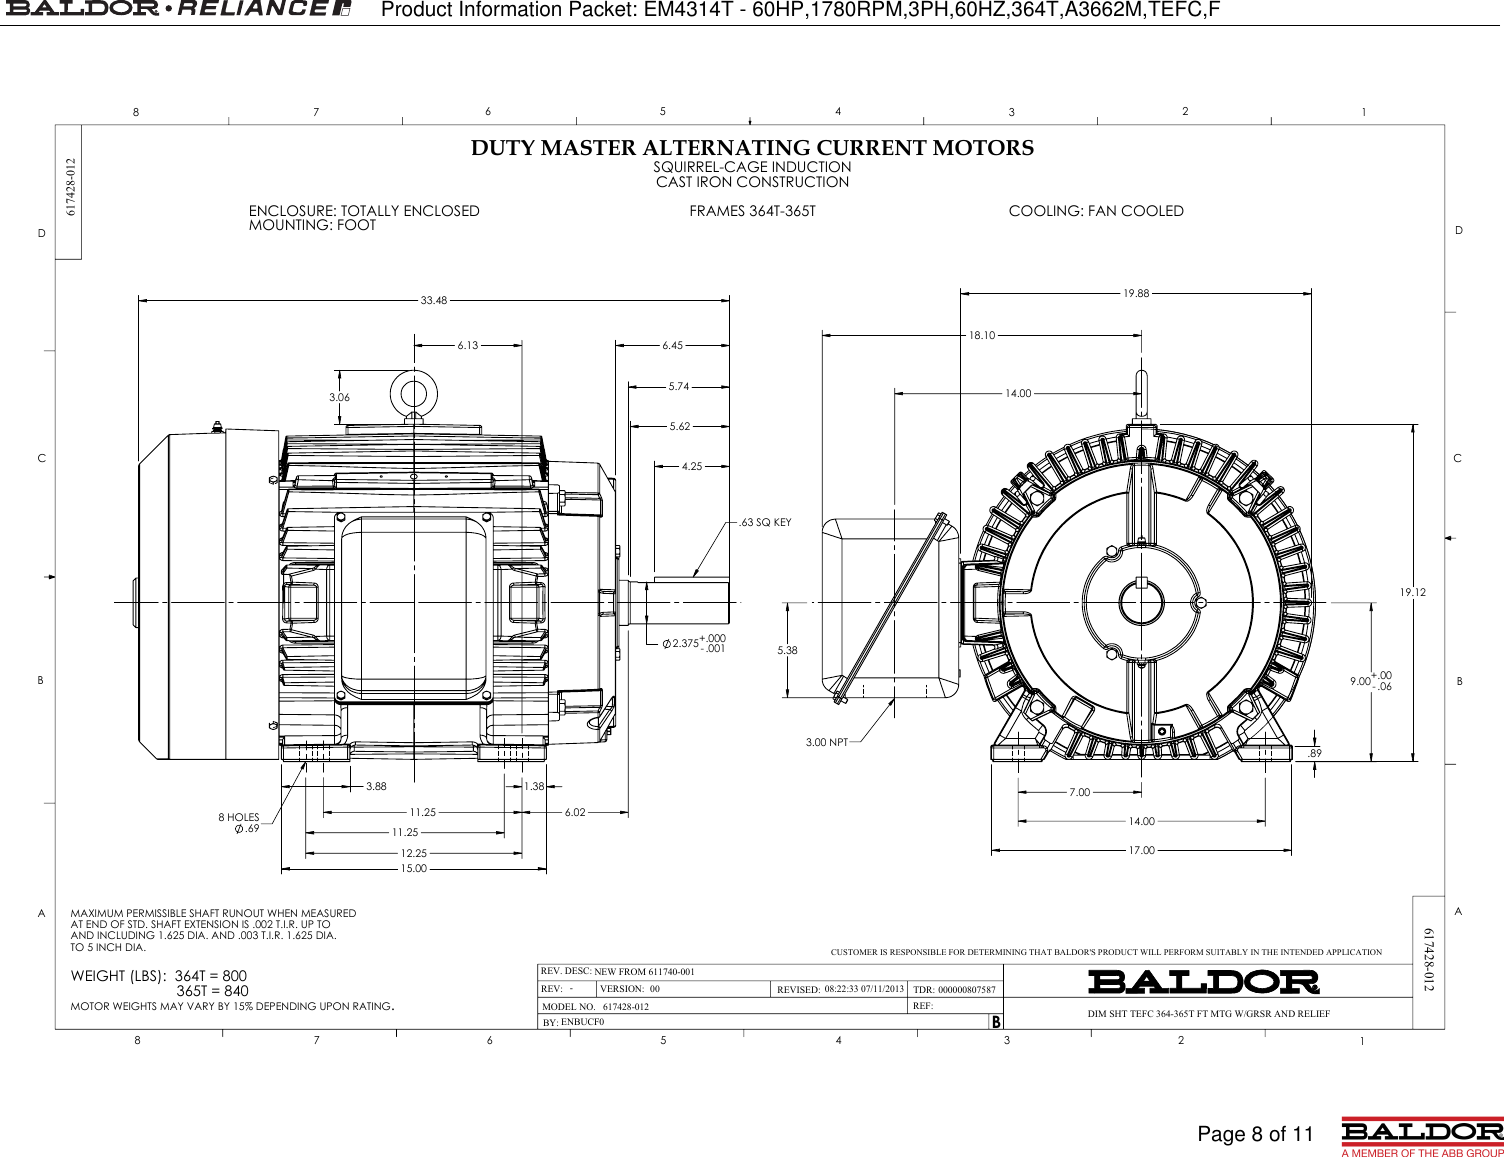 Page 8 of 11 - 547524 1 Baldor EM4314T Information Packet